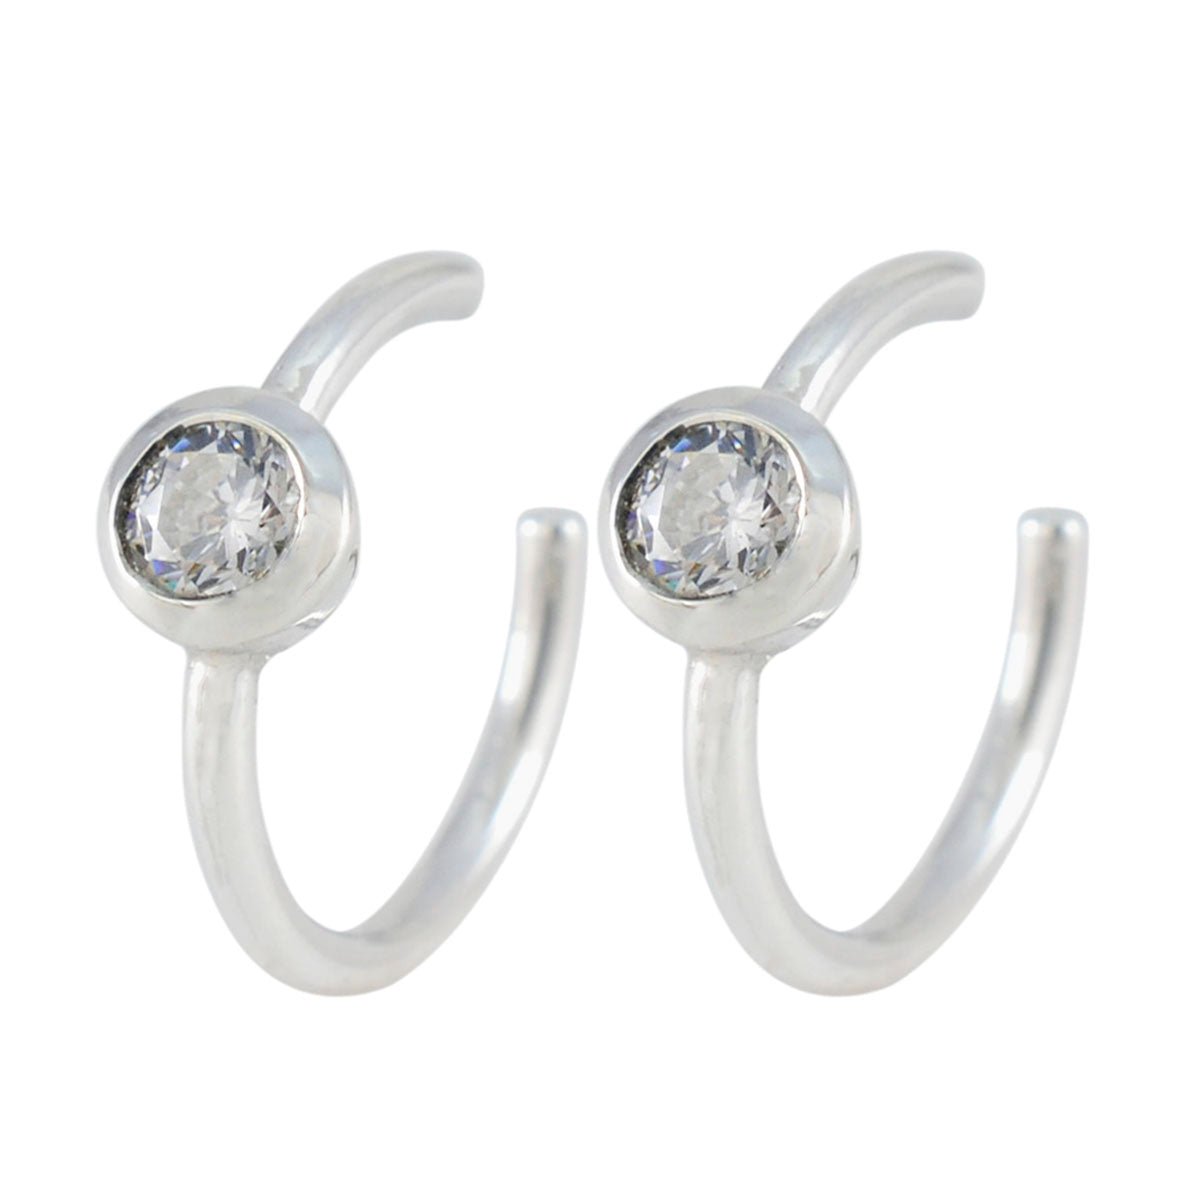 Riyo Heißer Sterling Silber Ohrring Für Femme Weiß CZ Ohrring Lünette Einstellung Weiß Ohrring Baumeln Ohrring